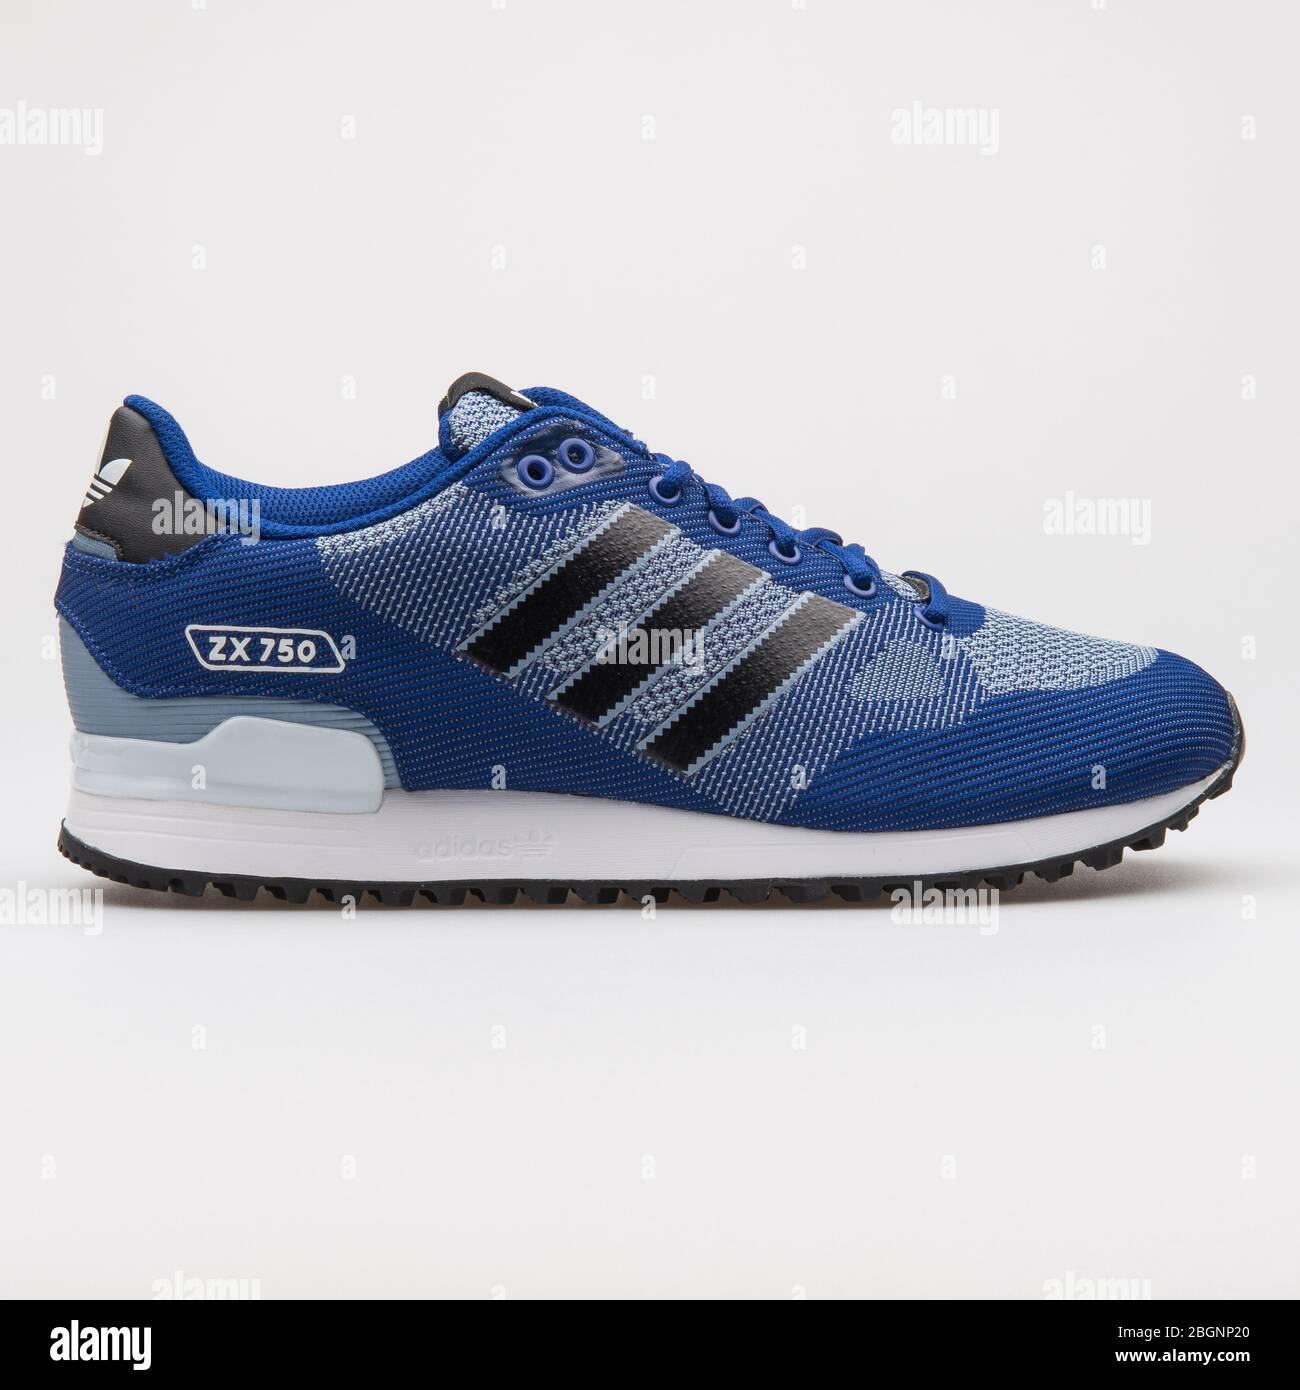 adidas zx 750 wv blue